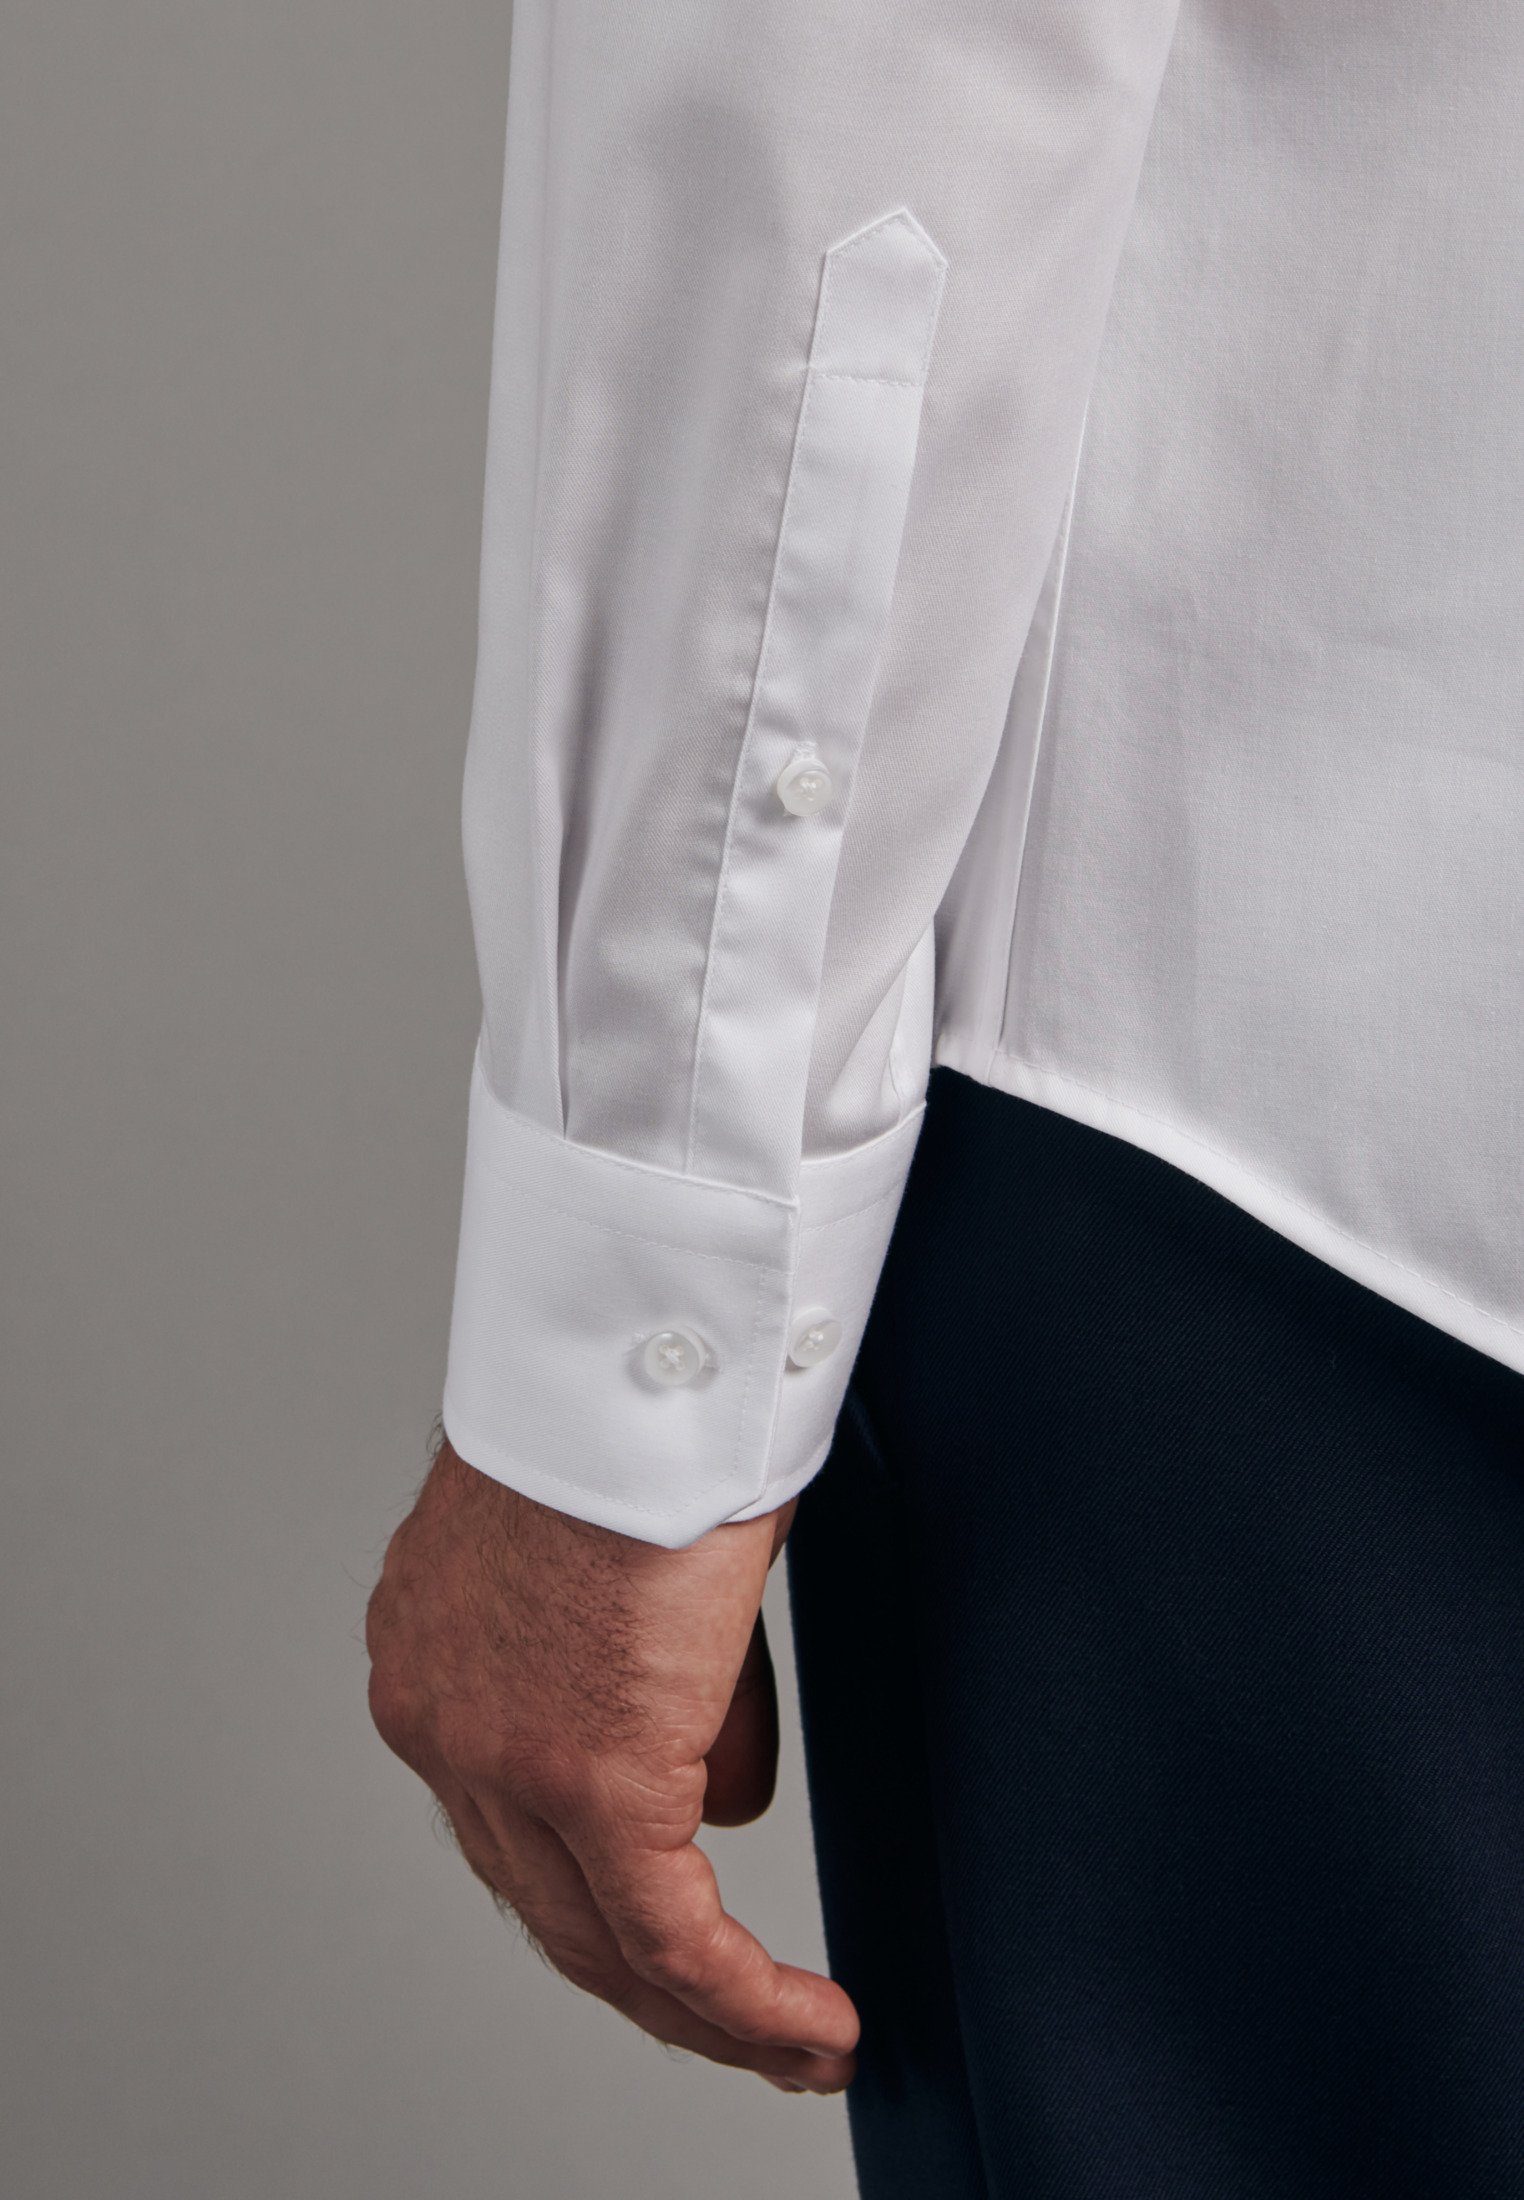 Uni Langarm Slim (01) Weiß seidensticker Kentkragen Businesshemd Slim